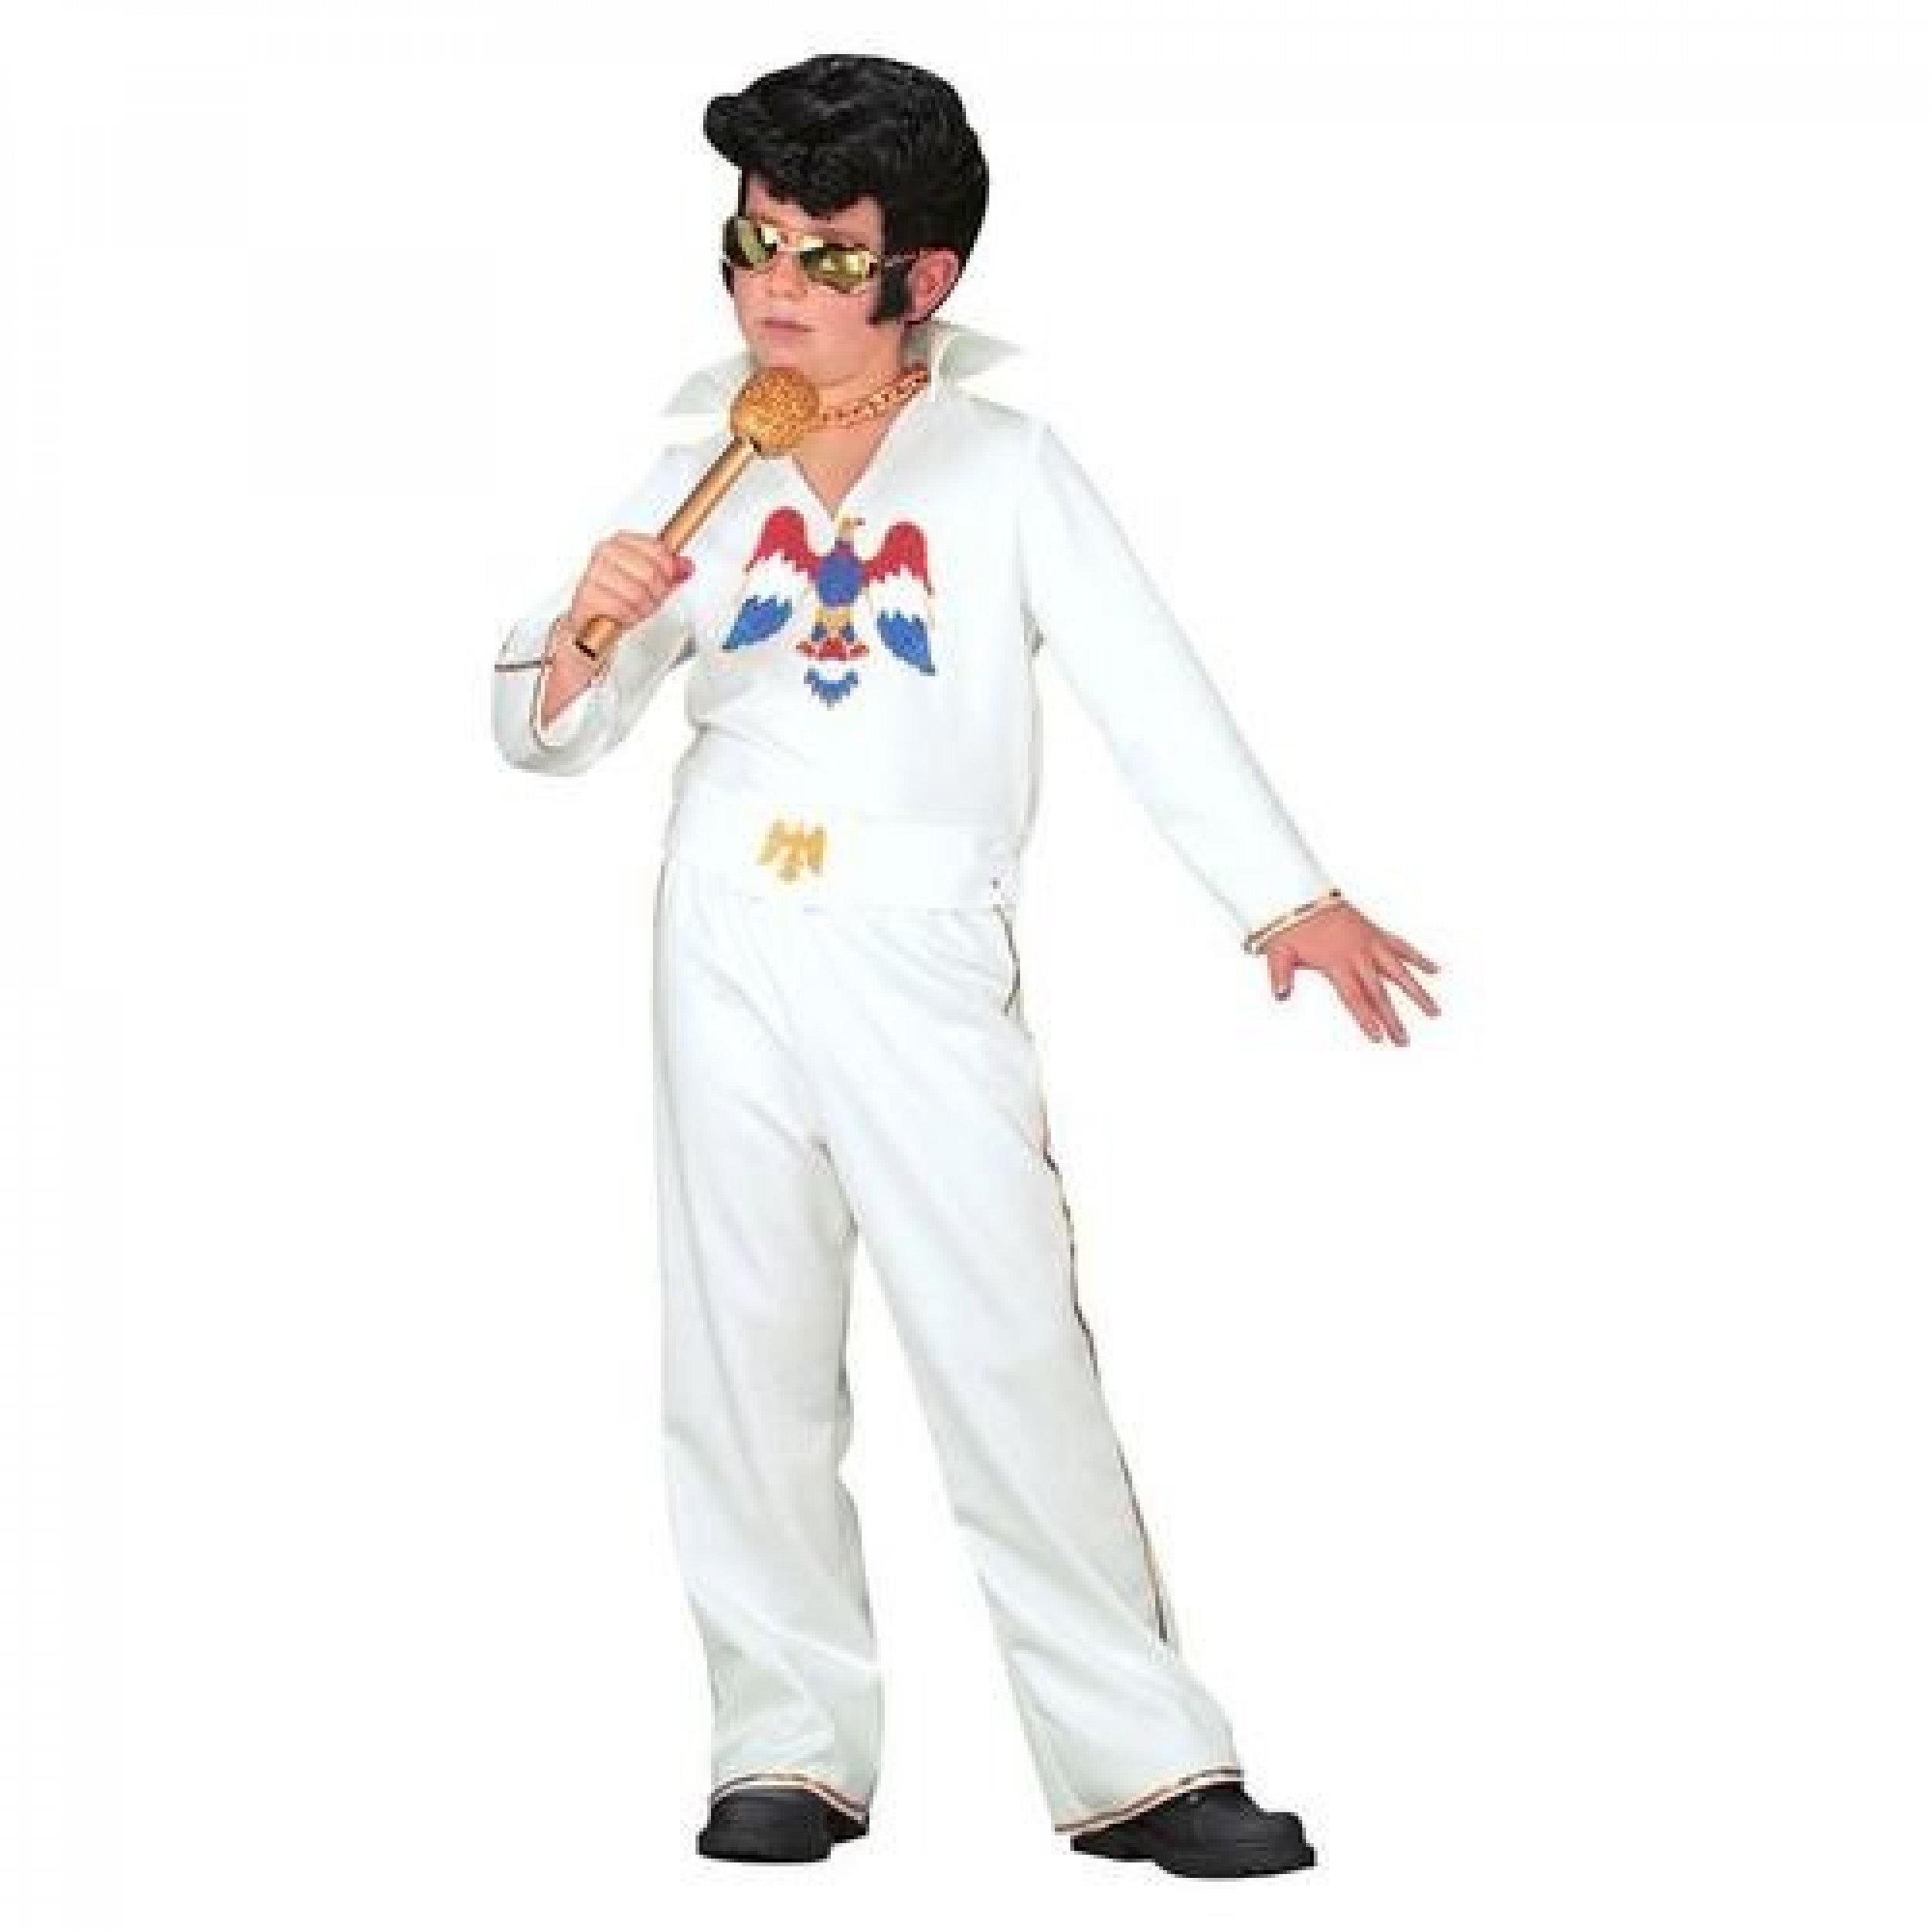 Authentic Elvis Presley Costume